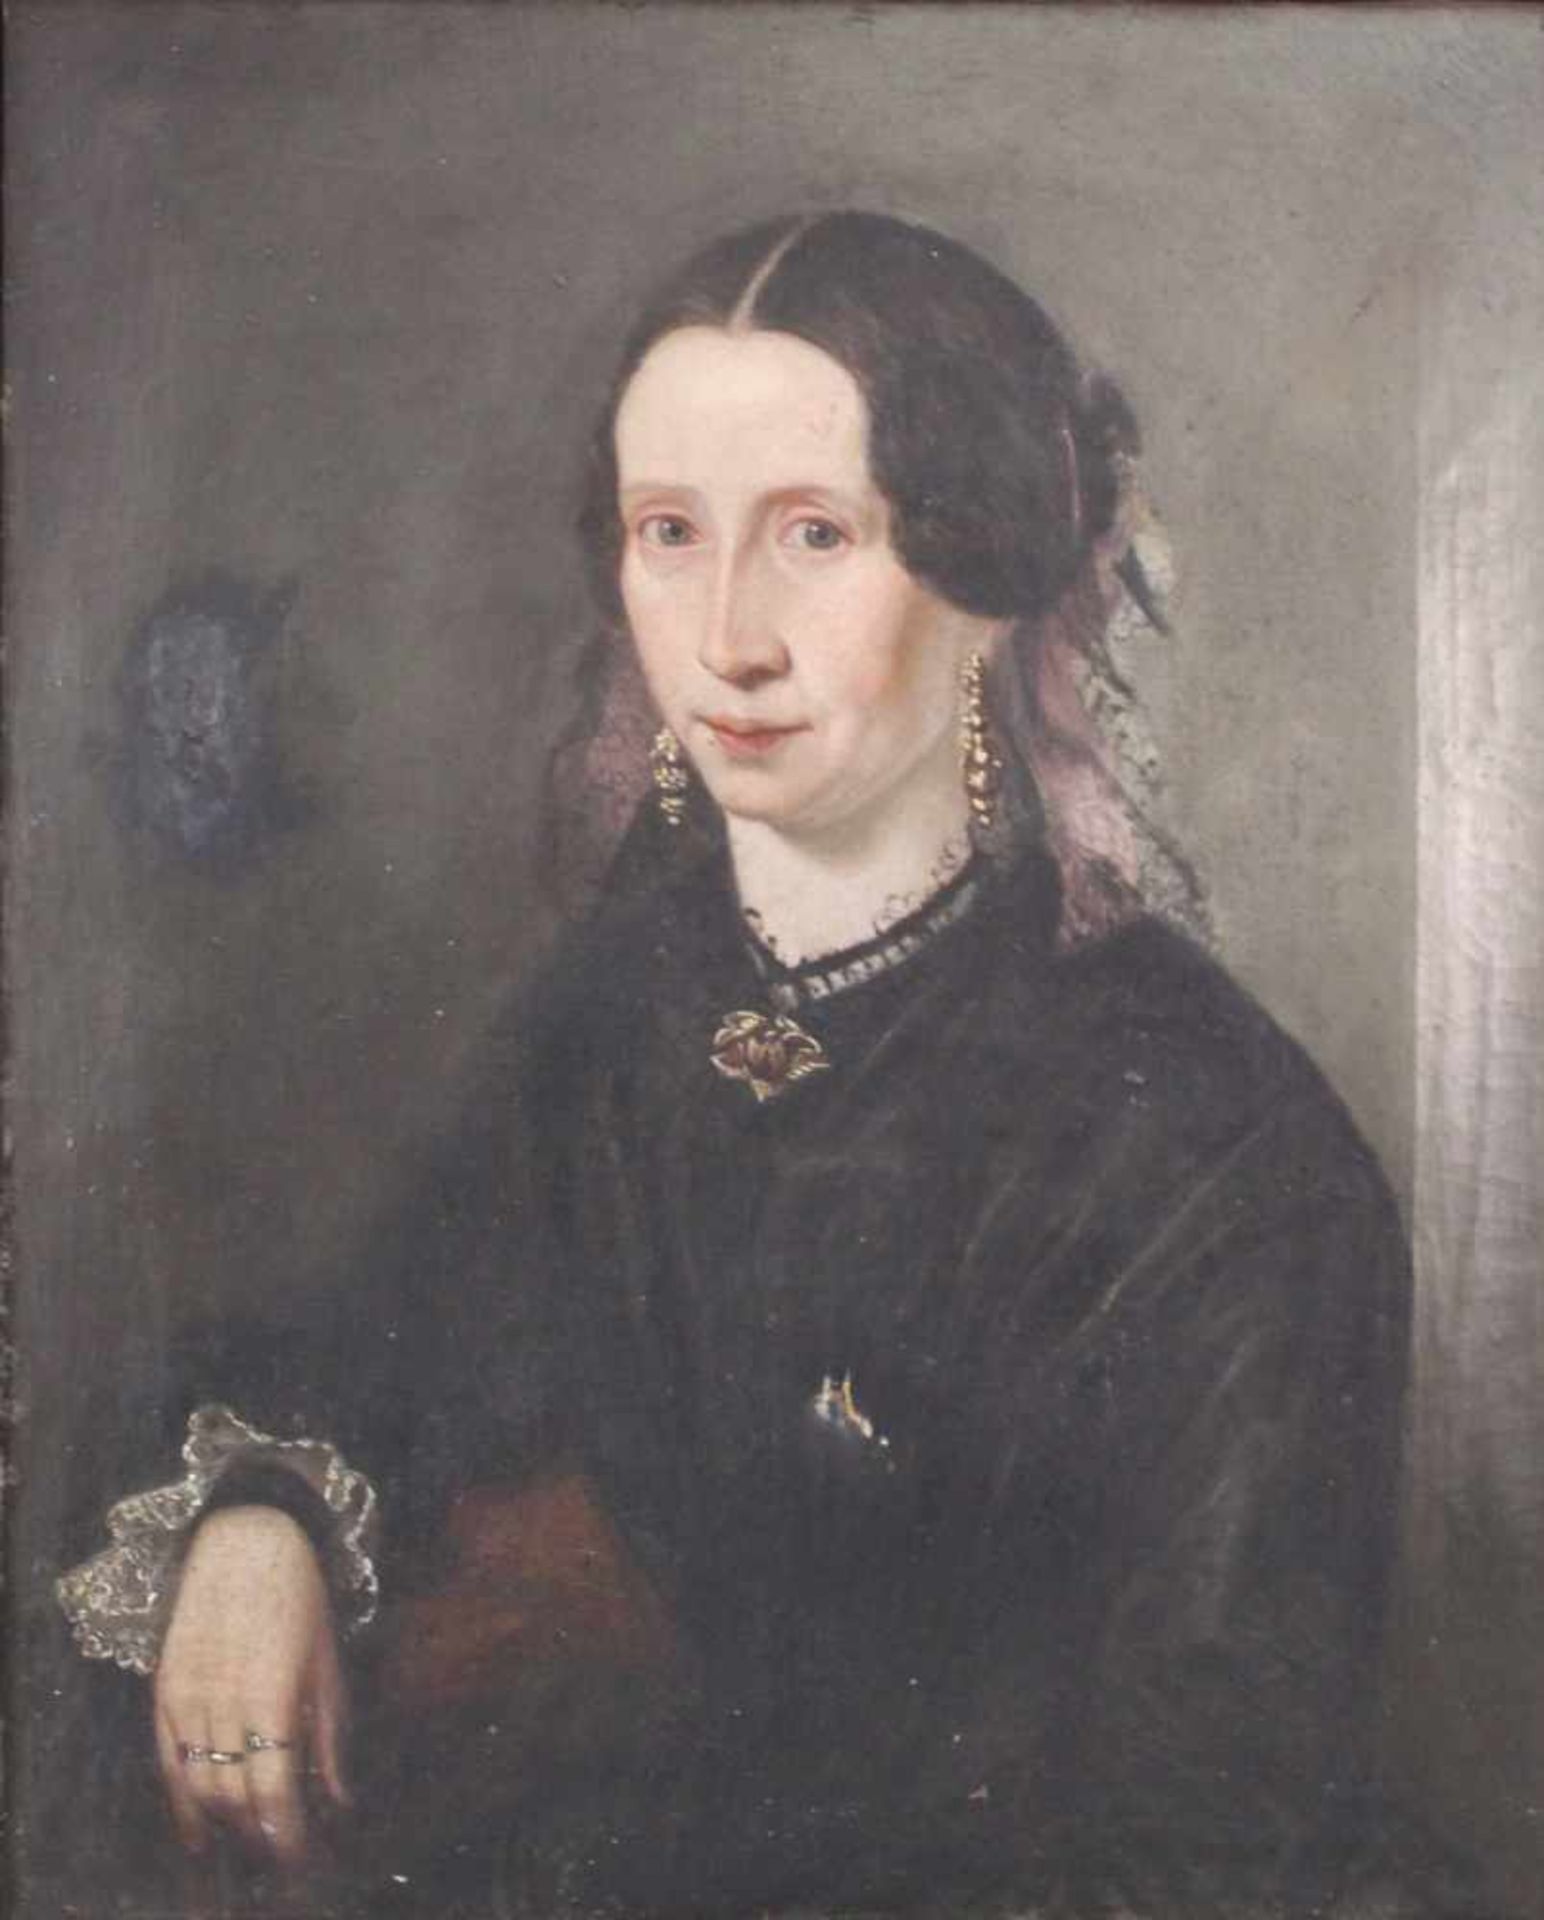 UNSIGNIERT (XIX). Portrait einer Patrizierin.67 cm x 55 cm. Gemälde. Öl auf Leinwand. Biedermeier um